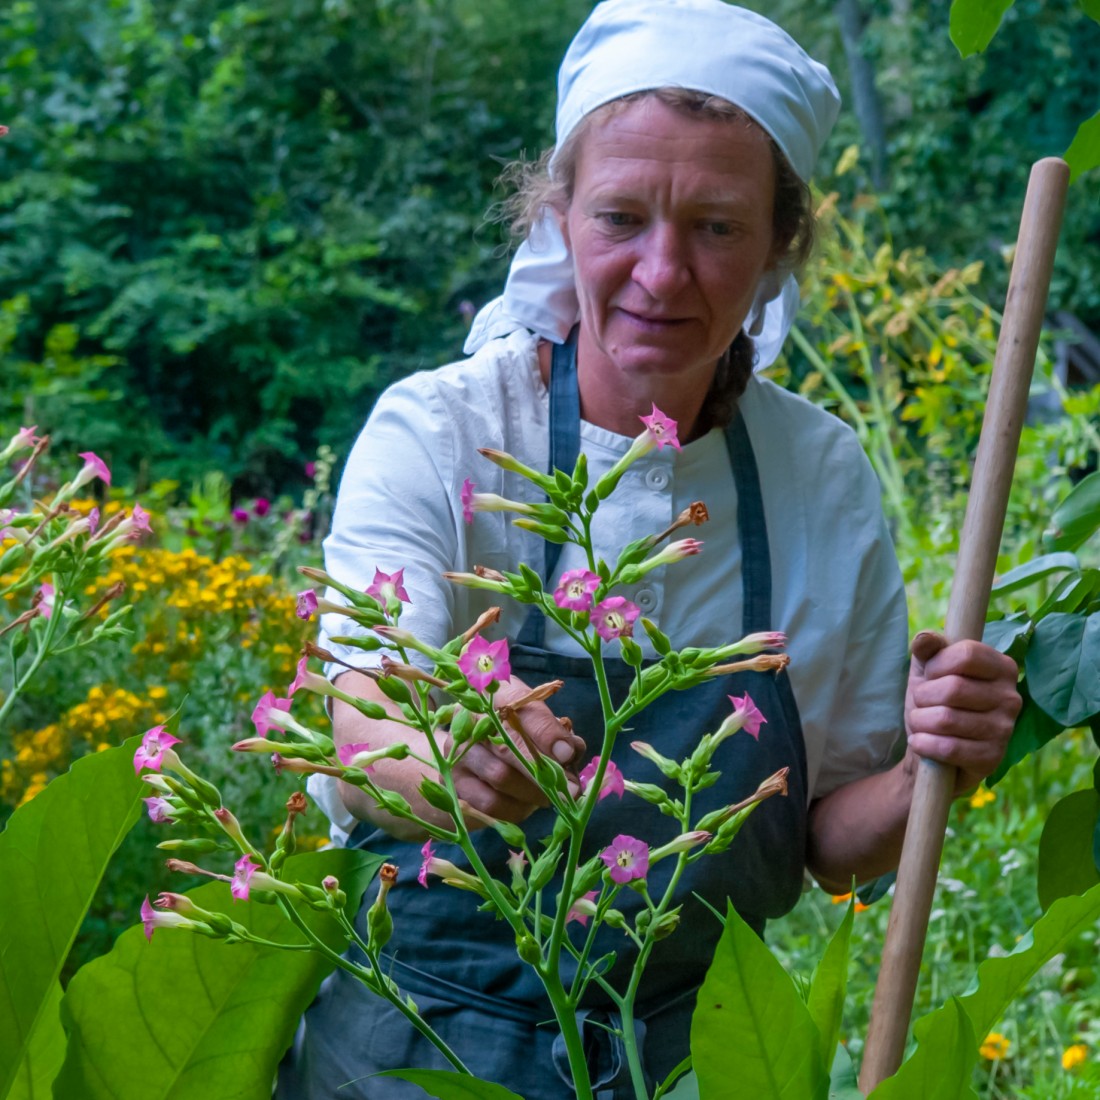 Eine Frau mit weißem Kpftuch pflückt Blüten eines lila blühenden Busches